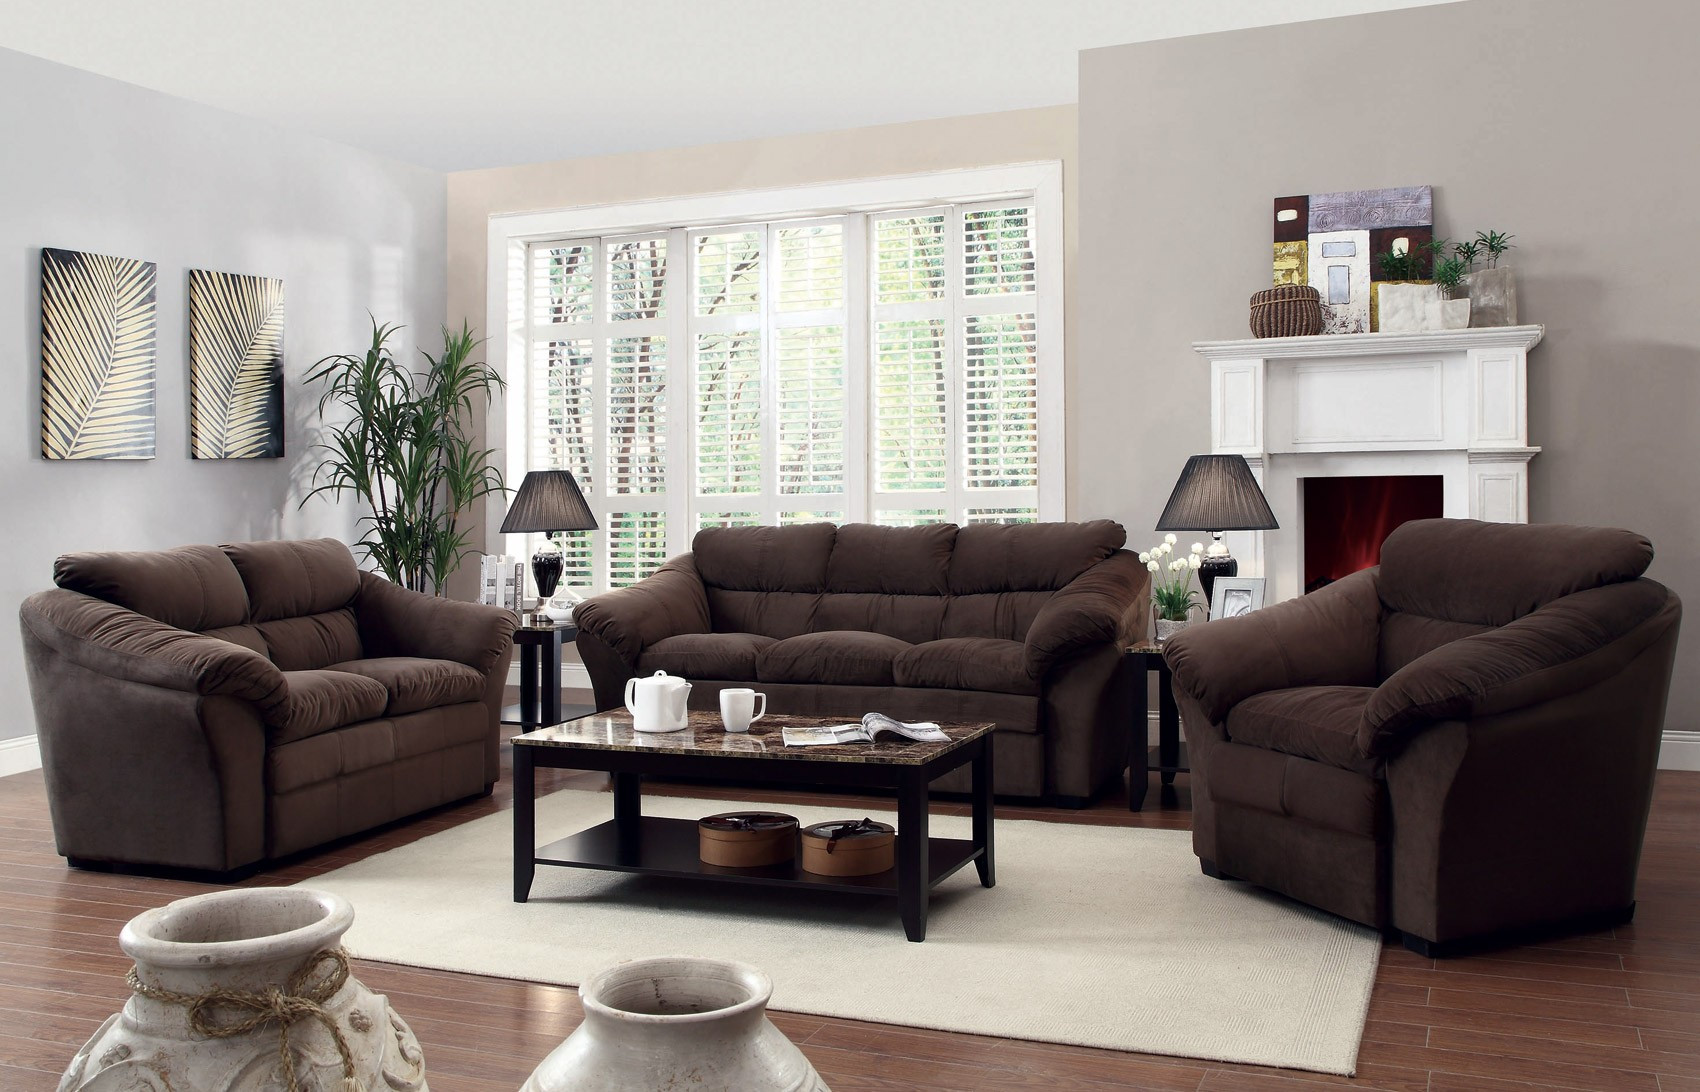 Modern Living Room Furniture Sets
 Arrangement Ideas for Modern Living Room Furniture Sets